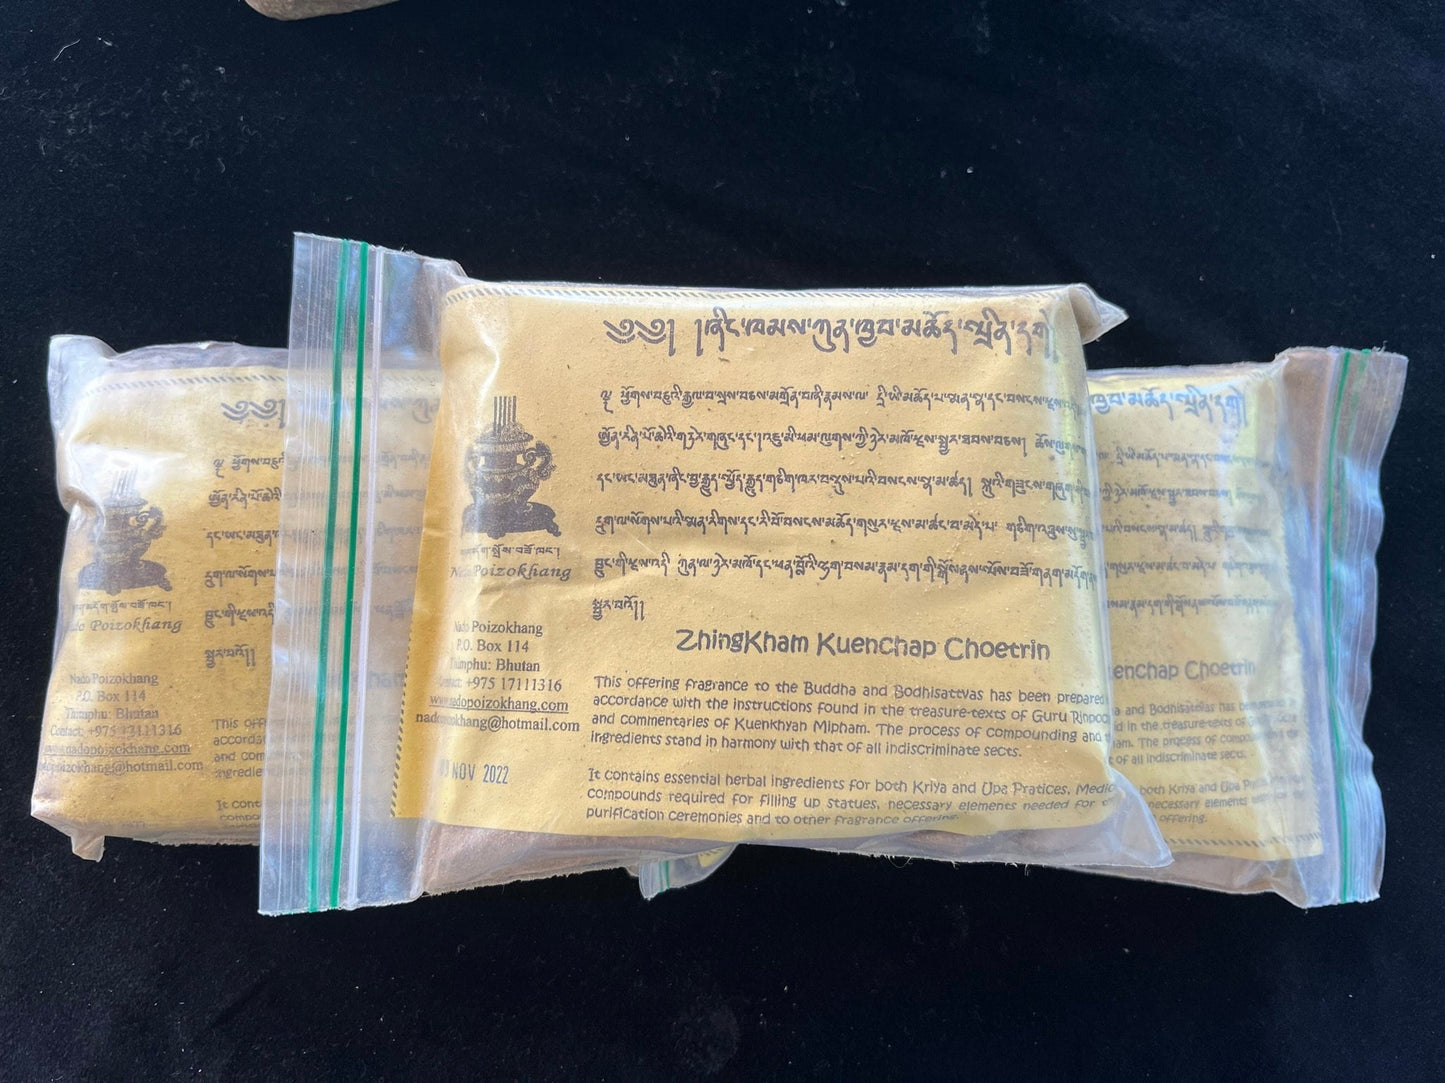 Nado Zhingkham Kuenchap Choetrin Powder Incense | Bhutanese Incense | 250 grams | Pure Herbal Incense |  Nado Poizokhang